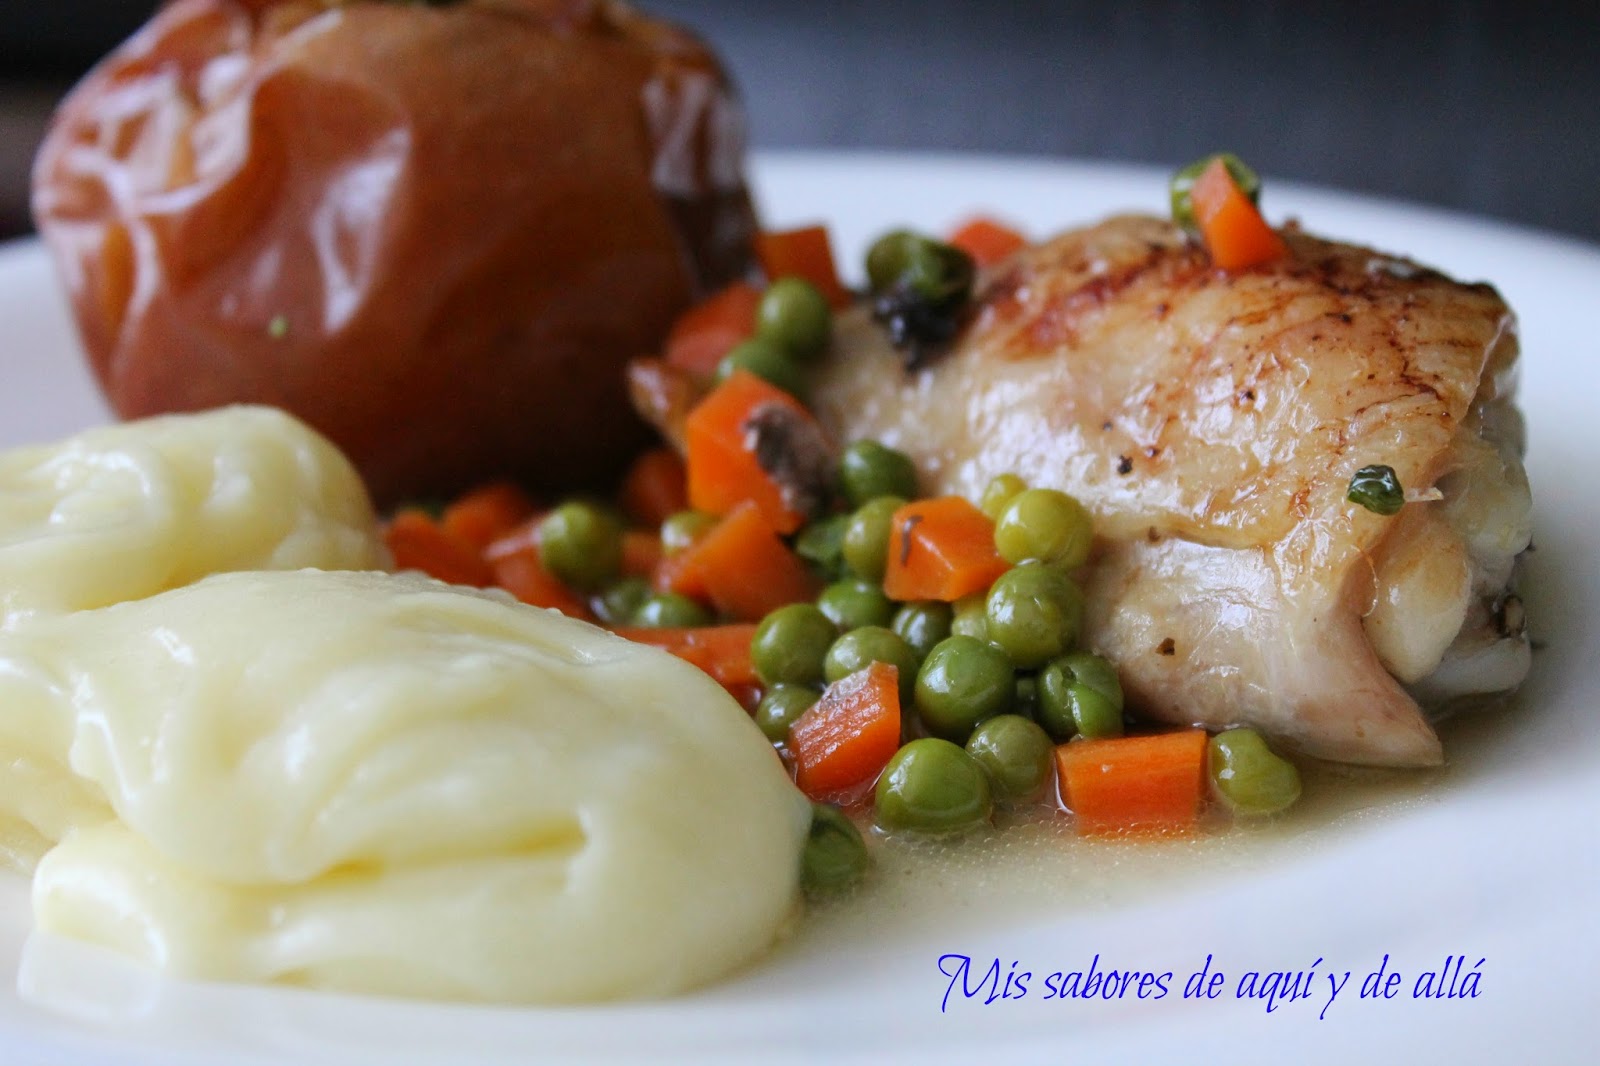 Pollo Asado Con Manzanas Y Verduritas // Roasted Chicken With Apples And Vegetables
